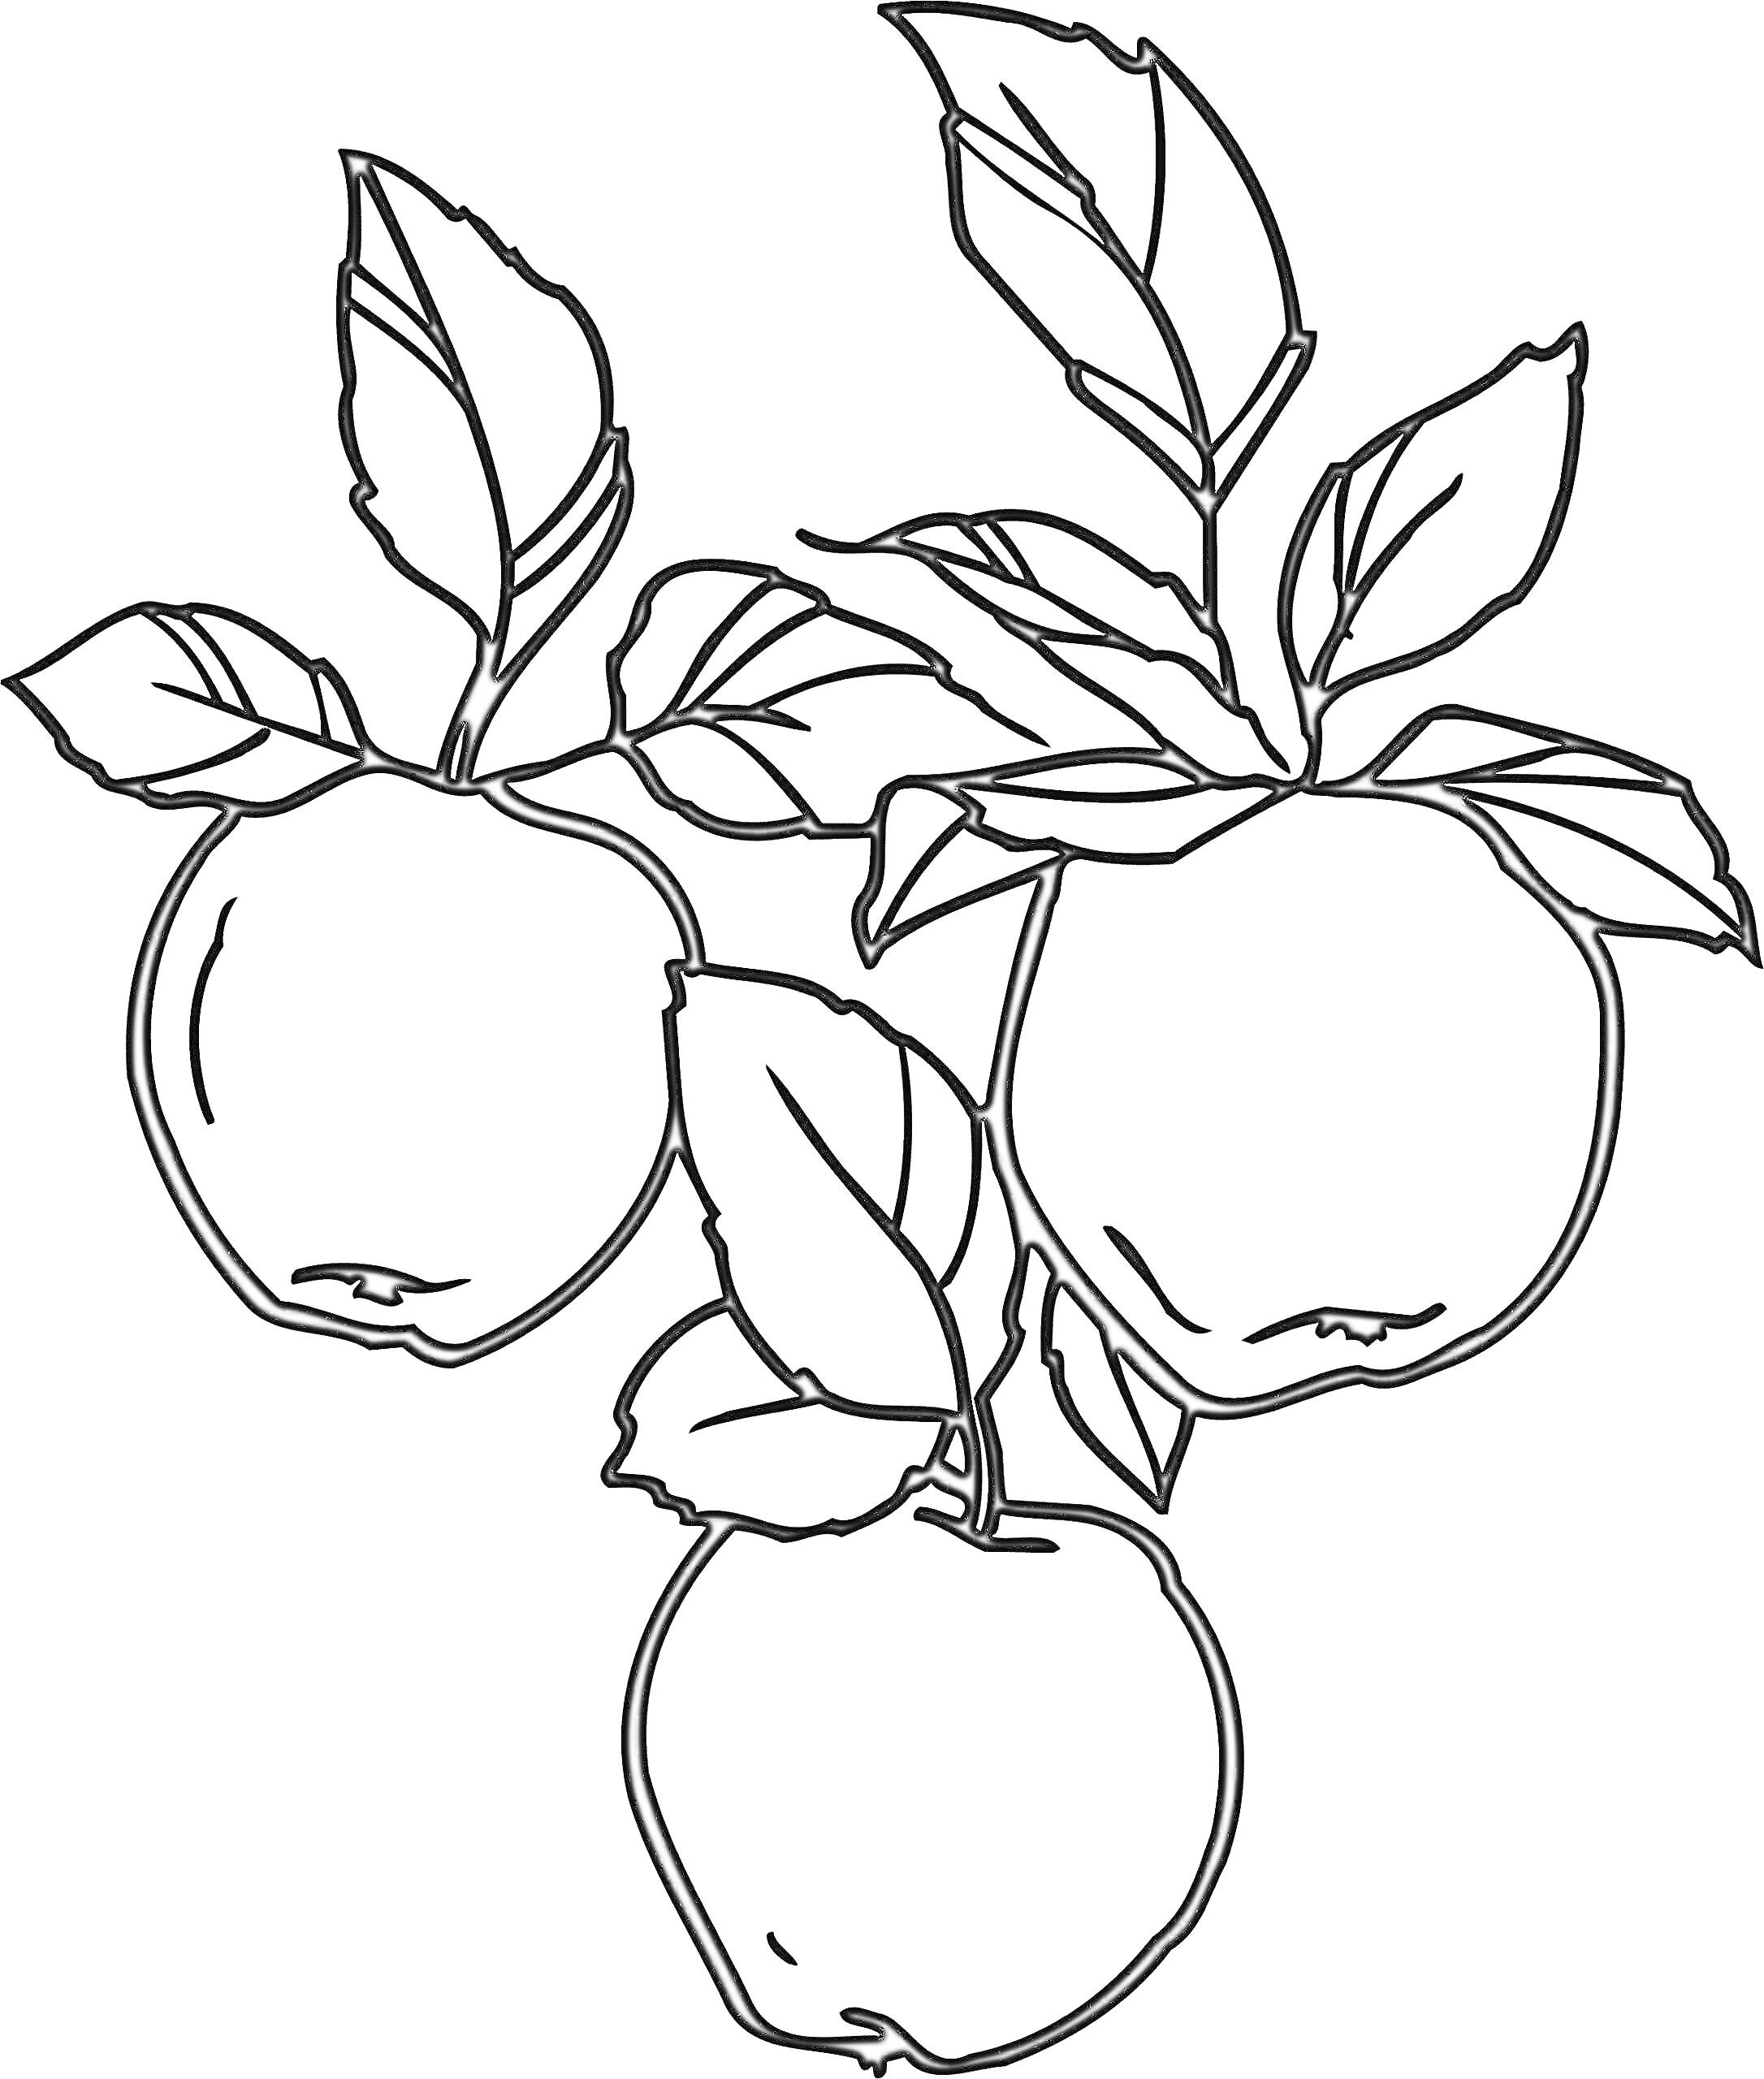 Раскраска Три яблока на ветке с листочками